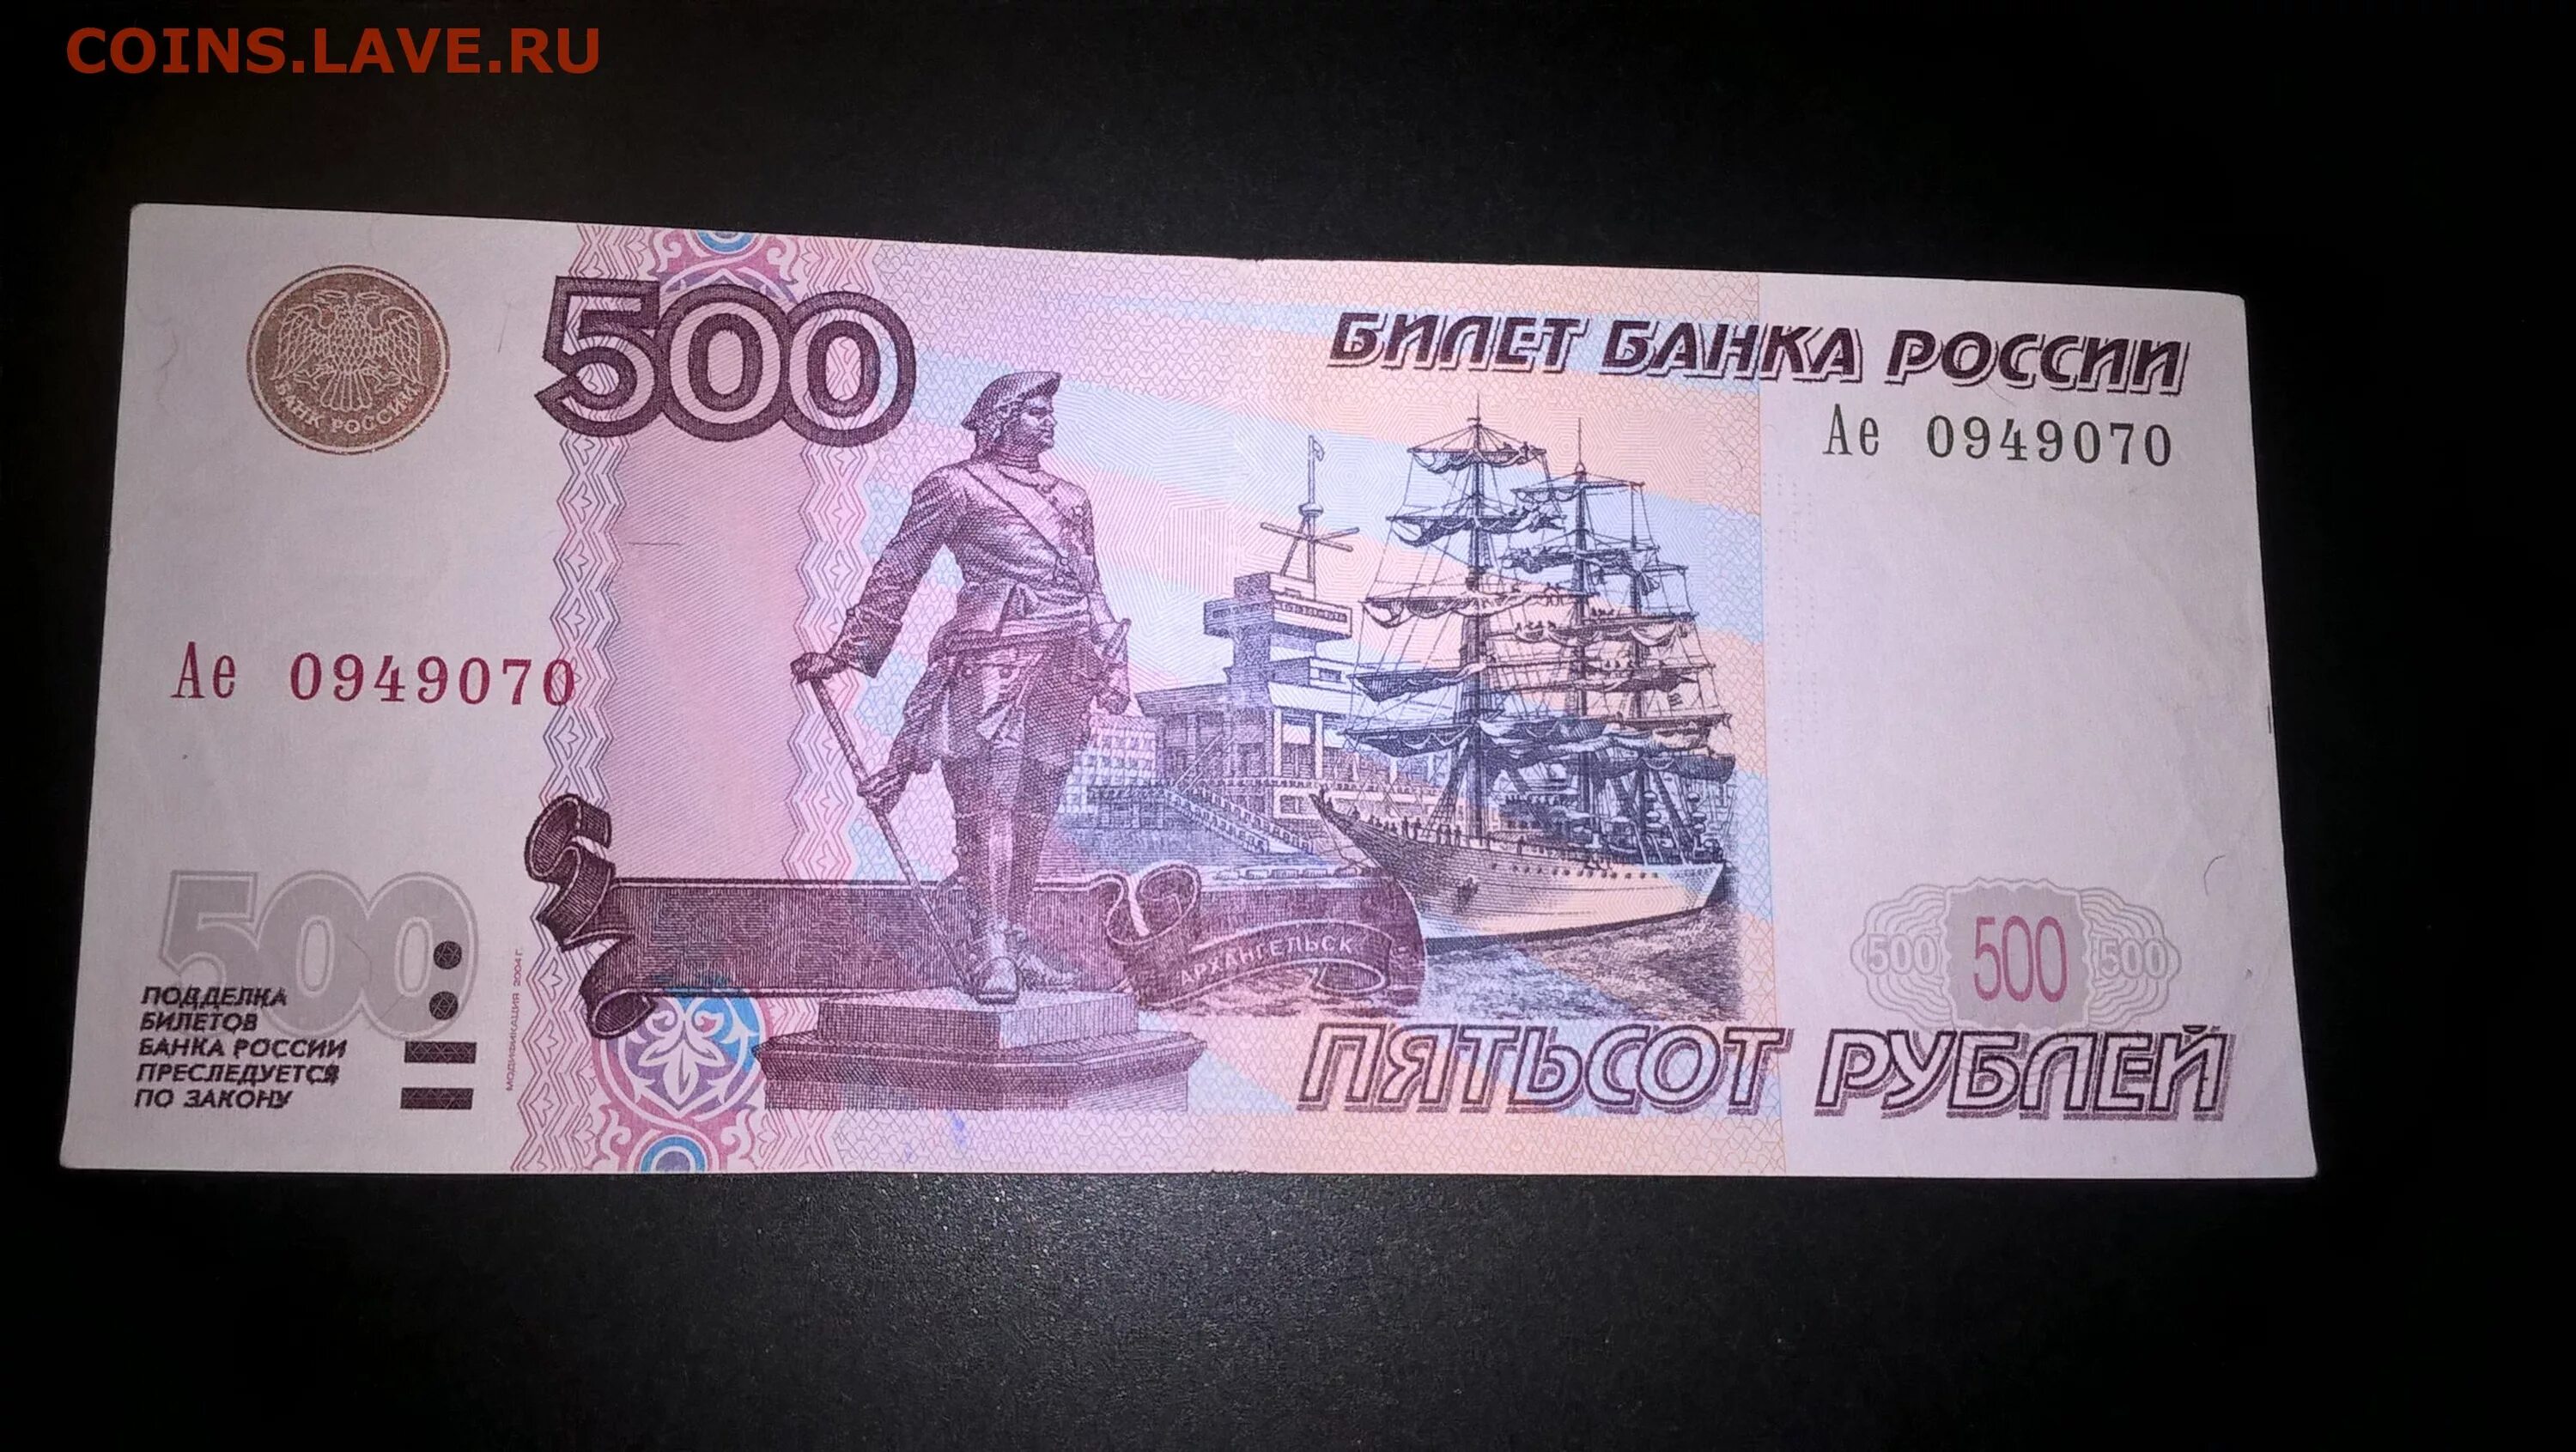 500 Рублей 1997. Билет банка России 500 рублей. Пятьсот рублей 1997. Банкноты с автомобилями.